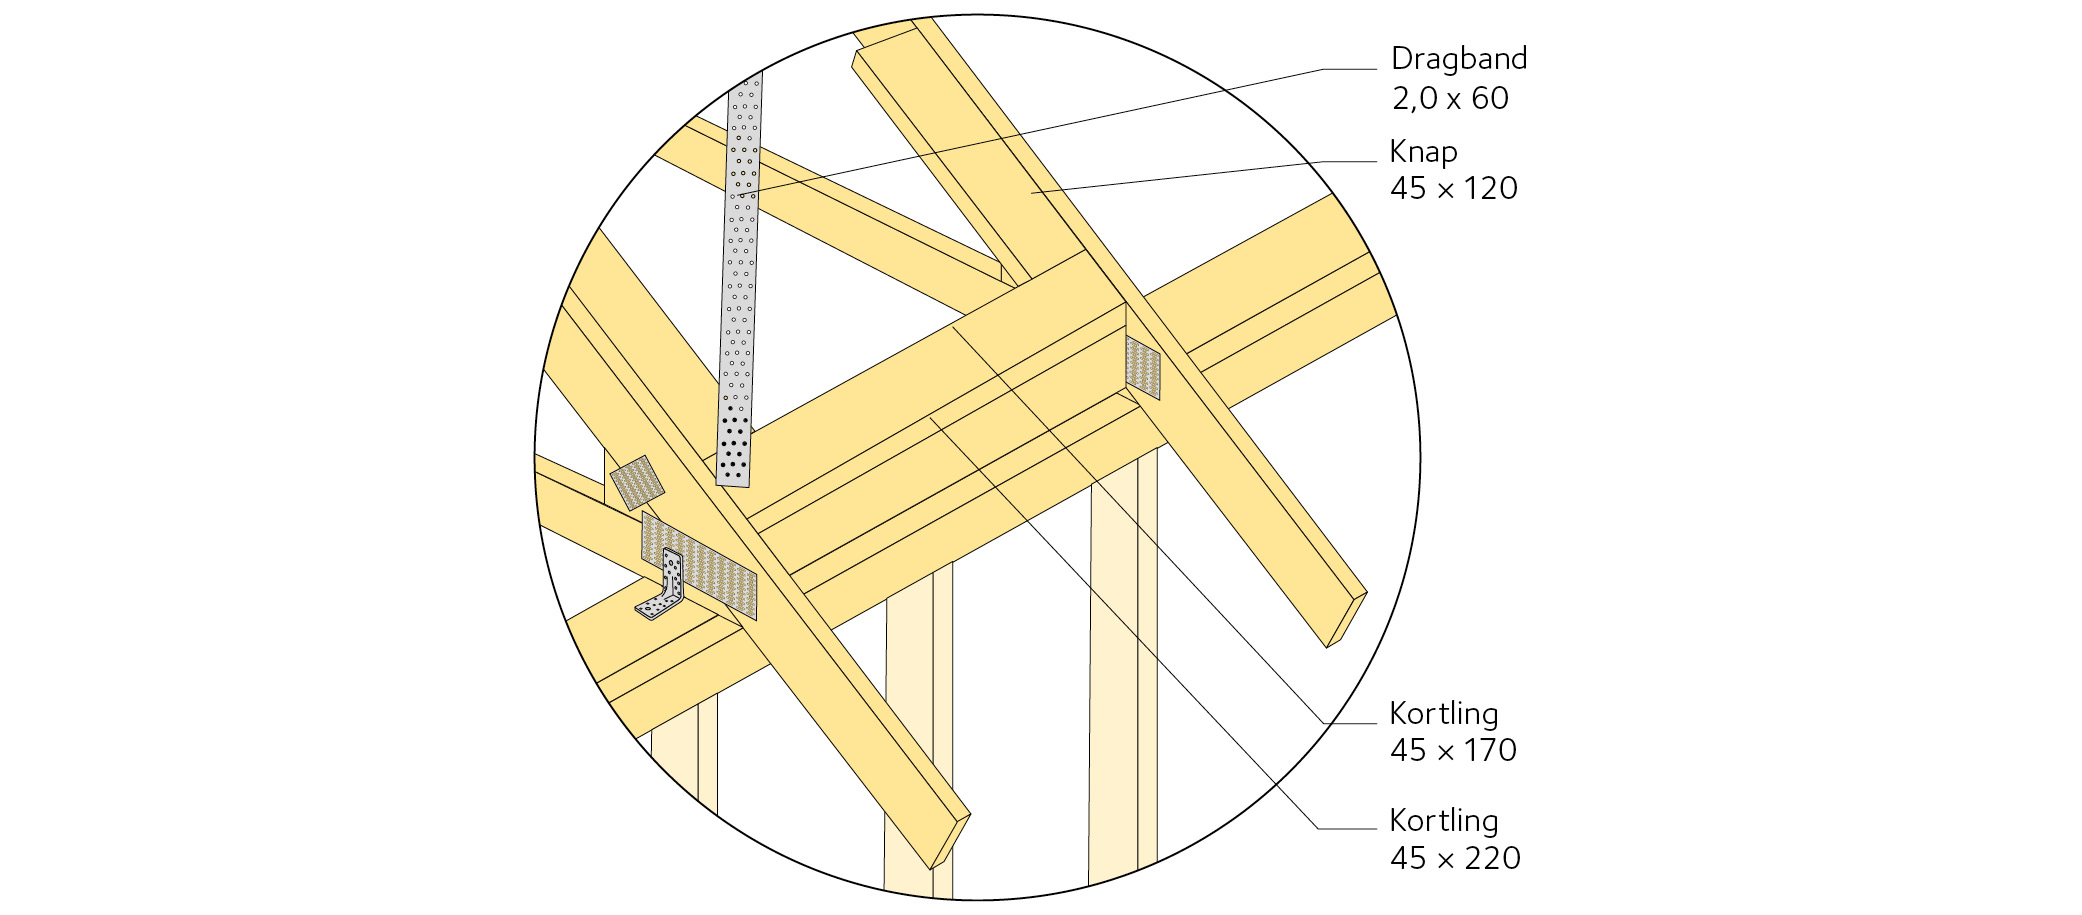 Detalj a) Infästning av dragband vid takfot